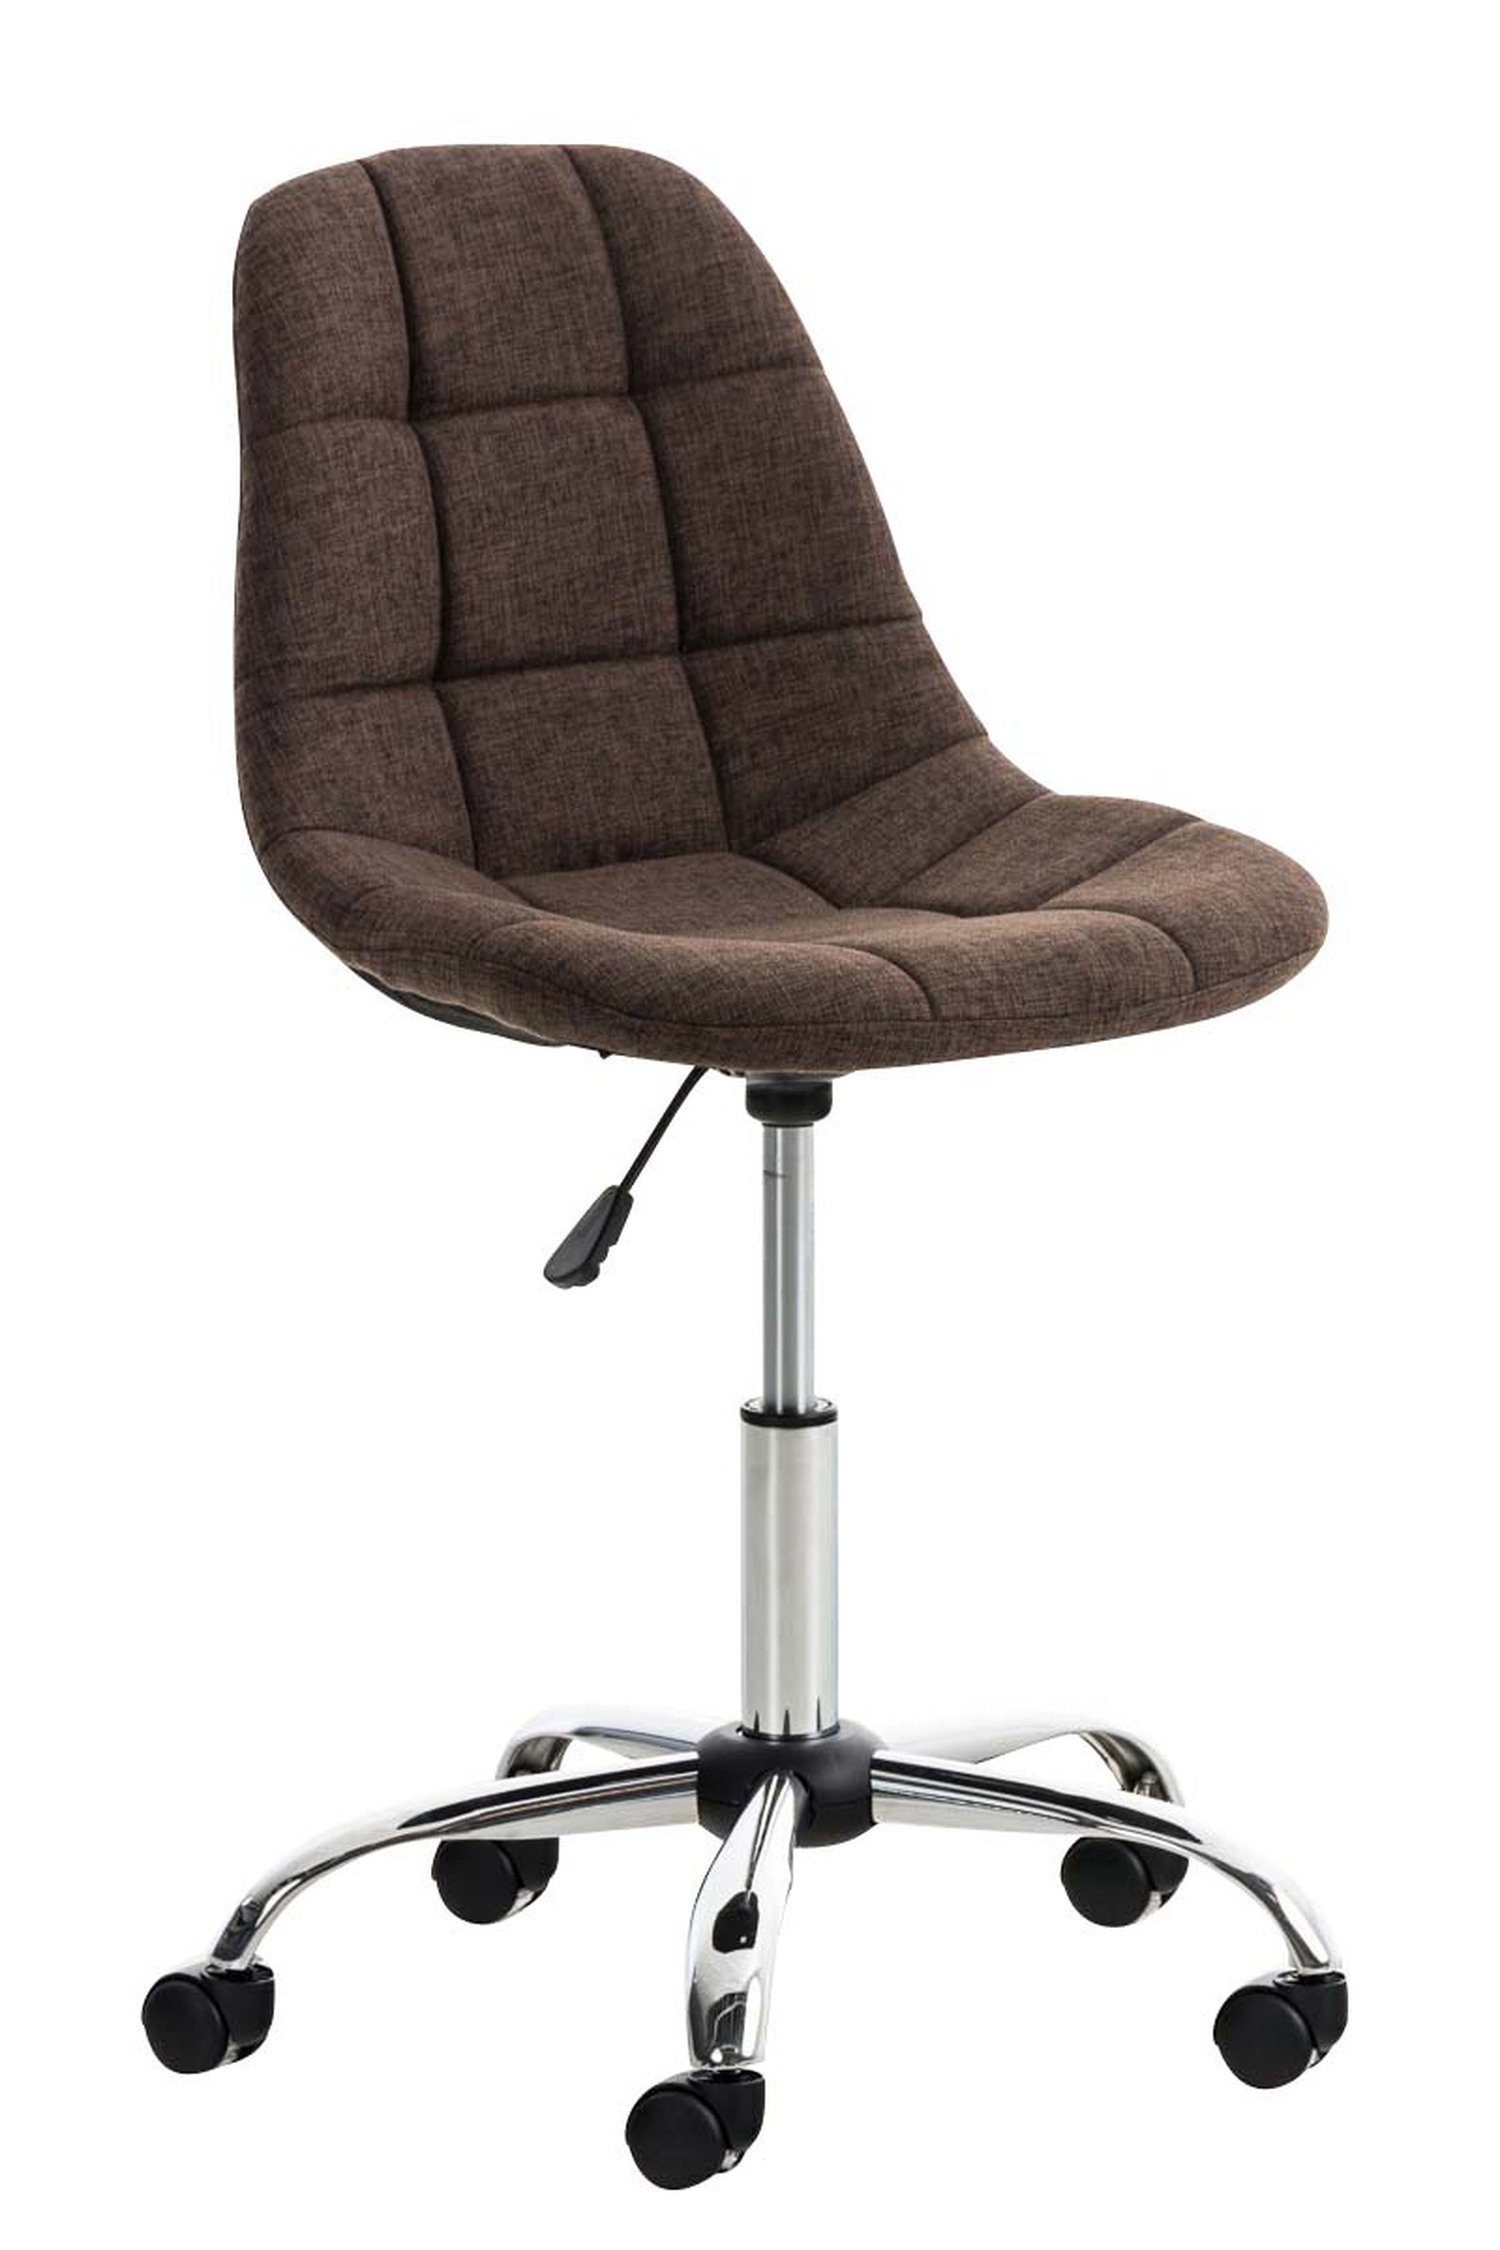 TPFLiving Bürostuhl Emily mit bequemer Rückenlehne - höhenverstellbar und 360° drehbar (Schreibtischstuhl, Drehstuhl, Chefsessel, Konferenzstuhl), Gestell: Metall chrom - Sitzfläche: Stoff braun